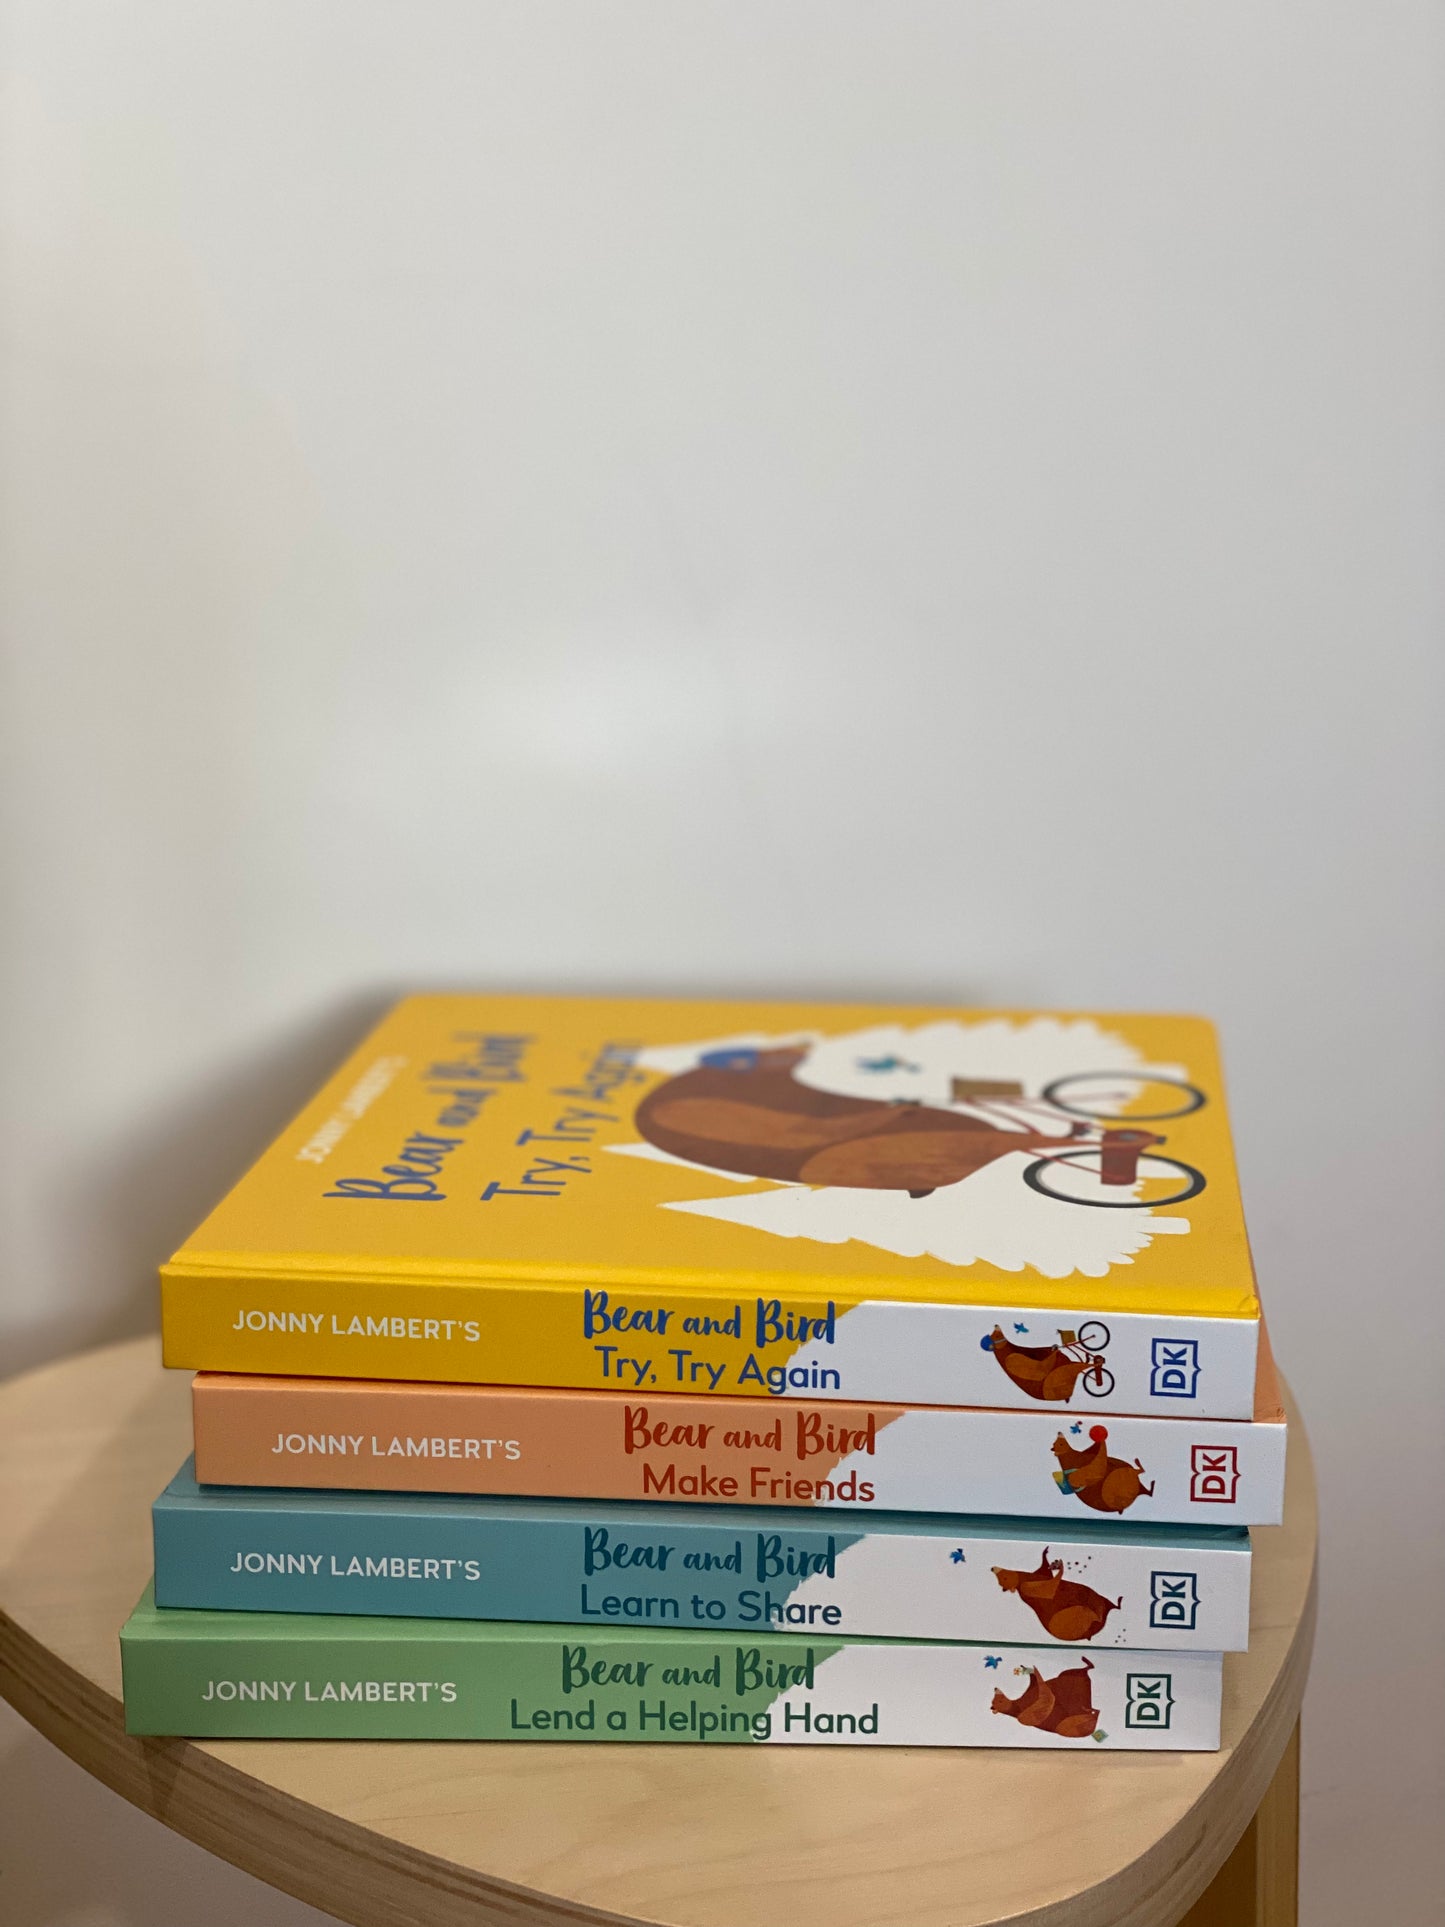 Jonny Lambert's Bear and Bird Book Series